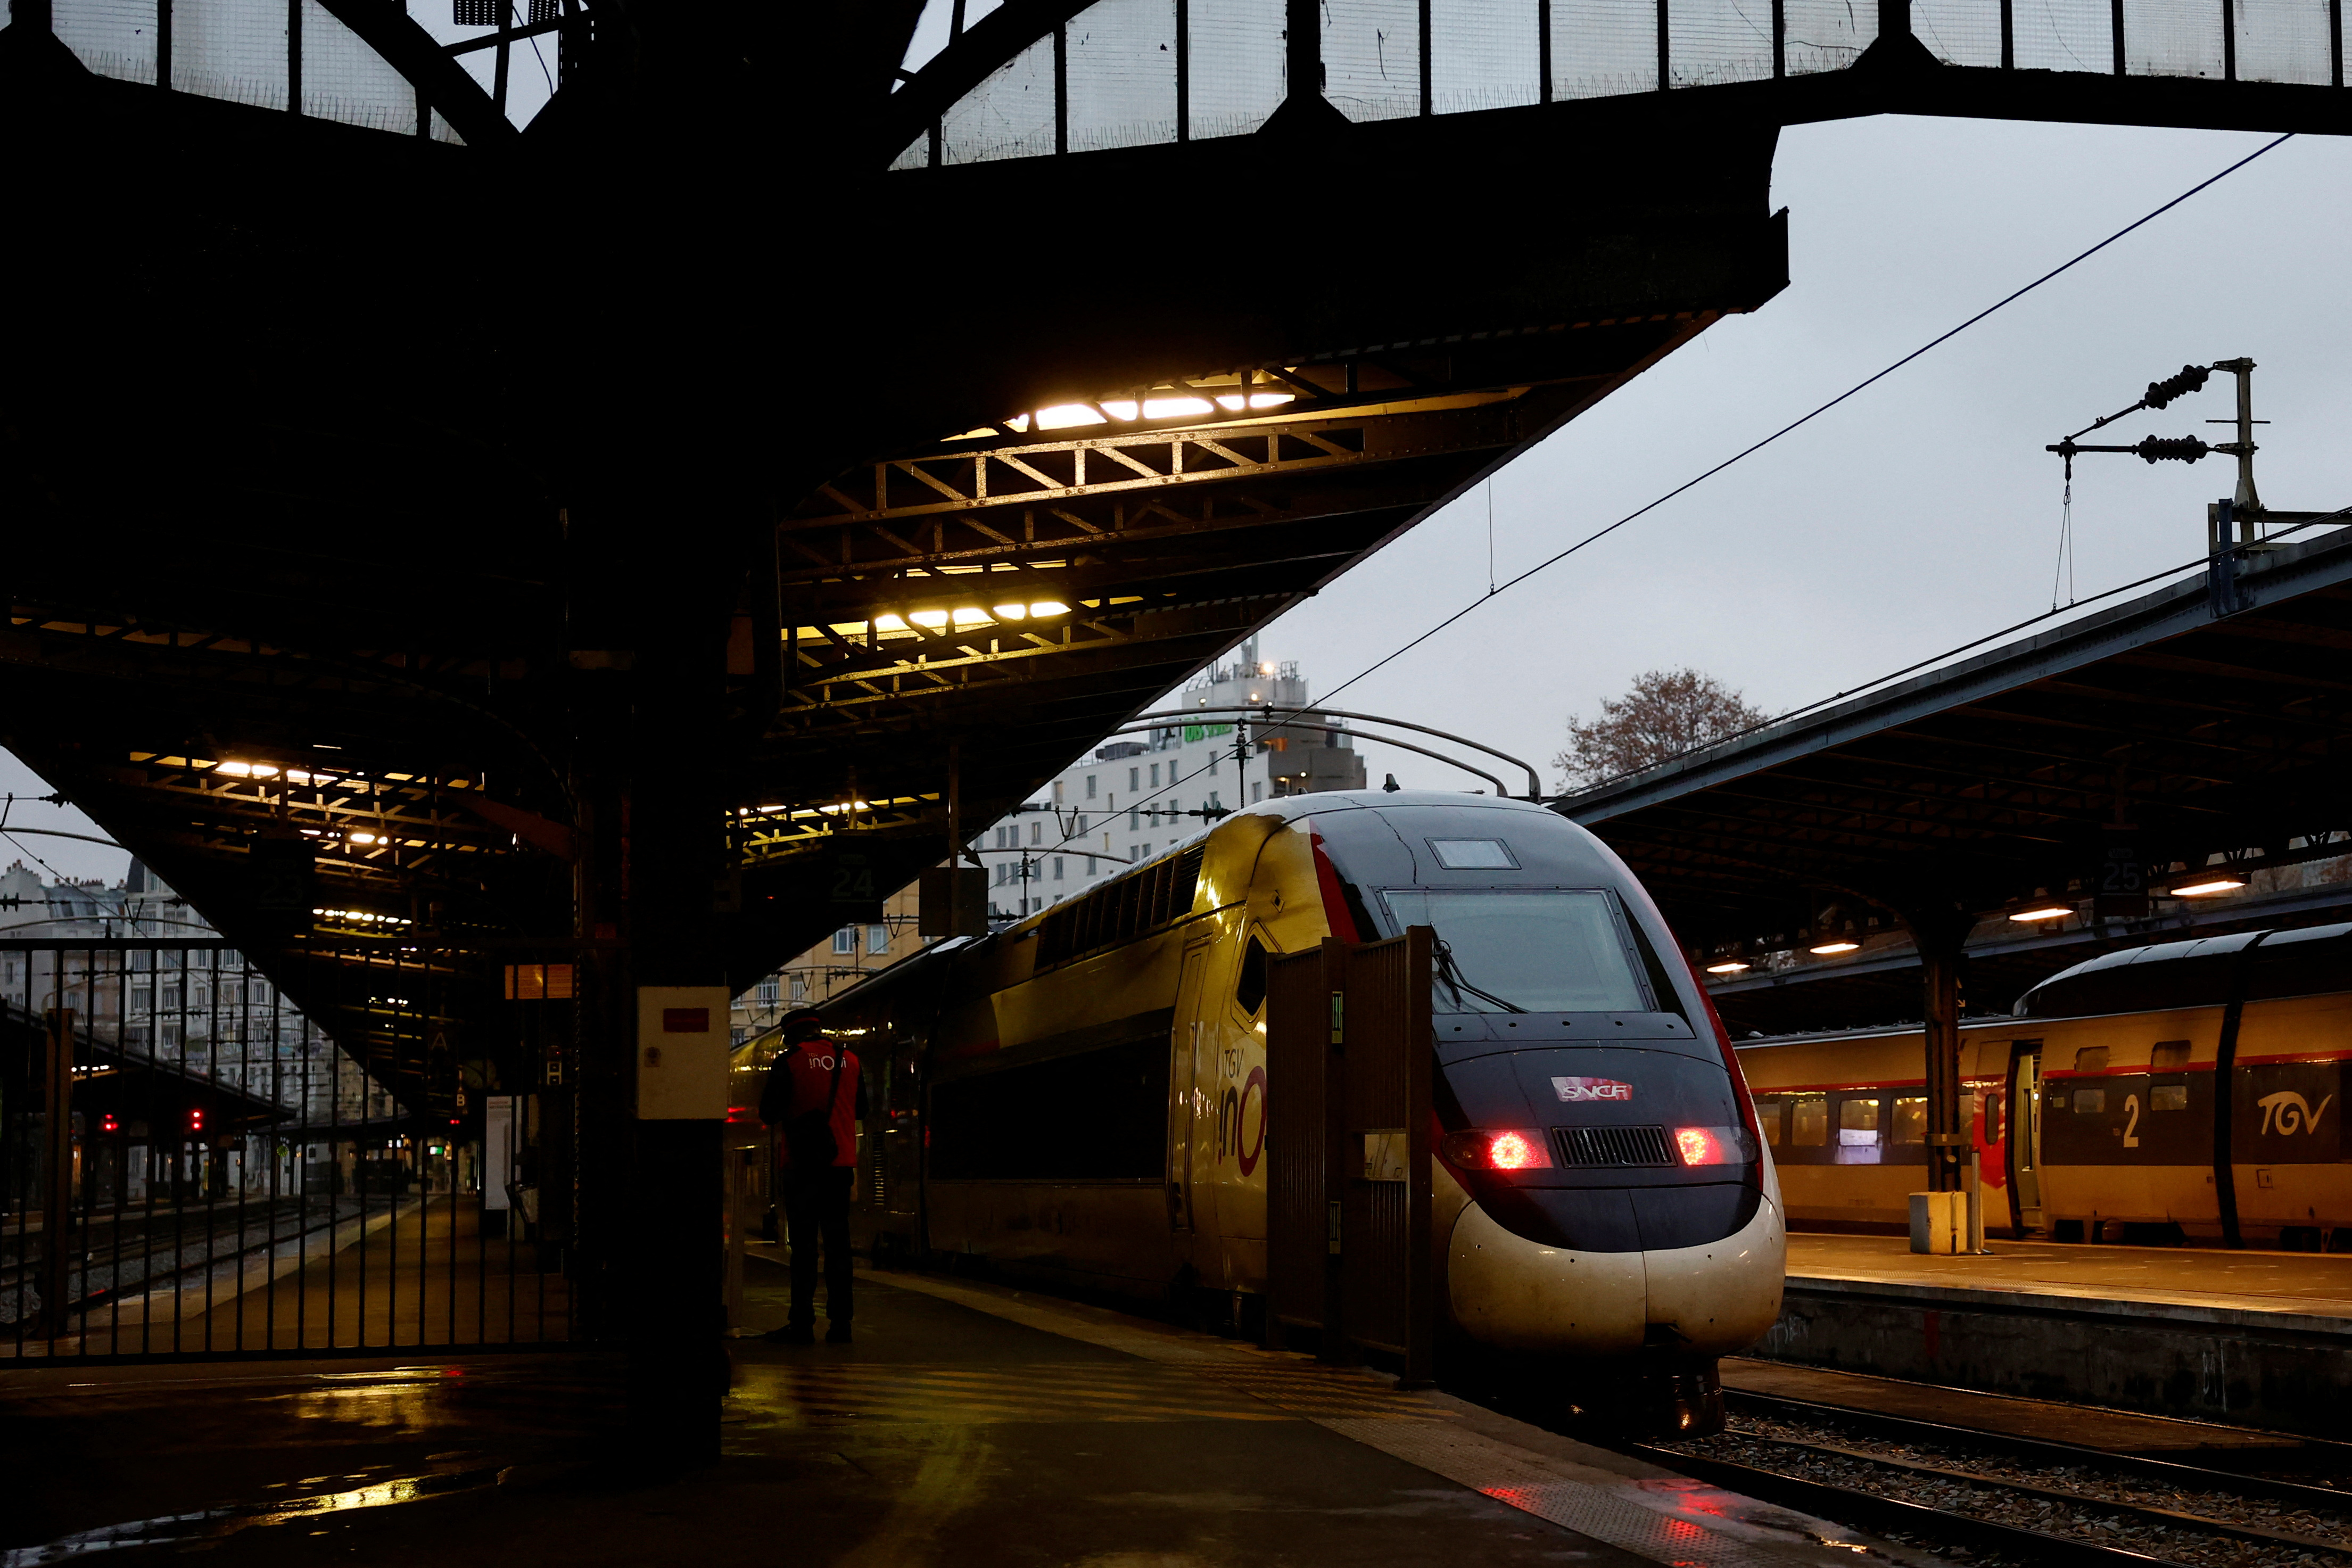 Un tren de alta velocidad TGV se ve en una plataforma en la estación de tren Gare de l'Est en París (Reuters/archivo)